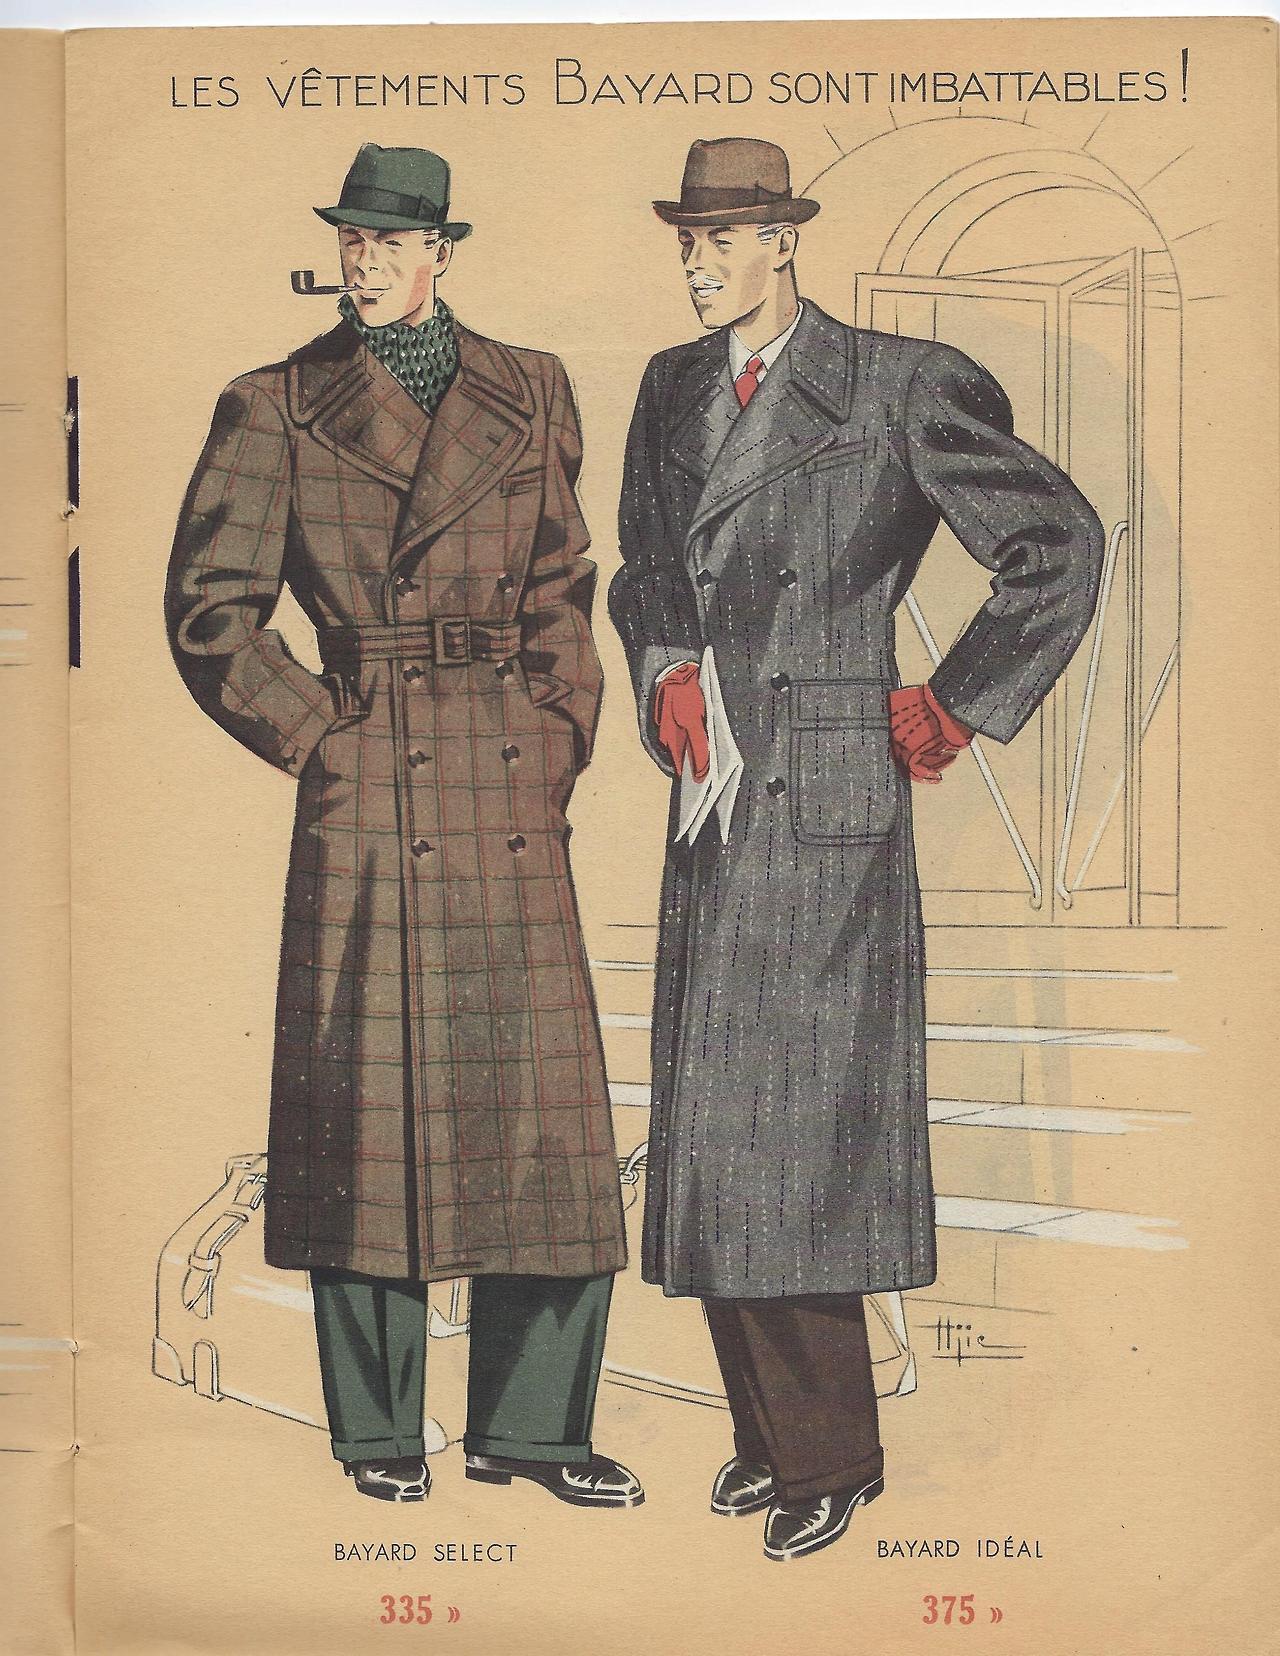 Bayard in the 1930s: Outerwear